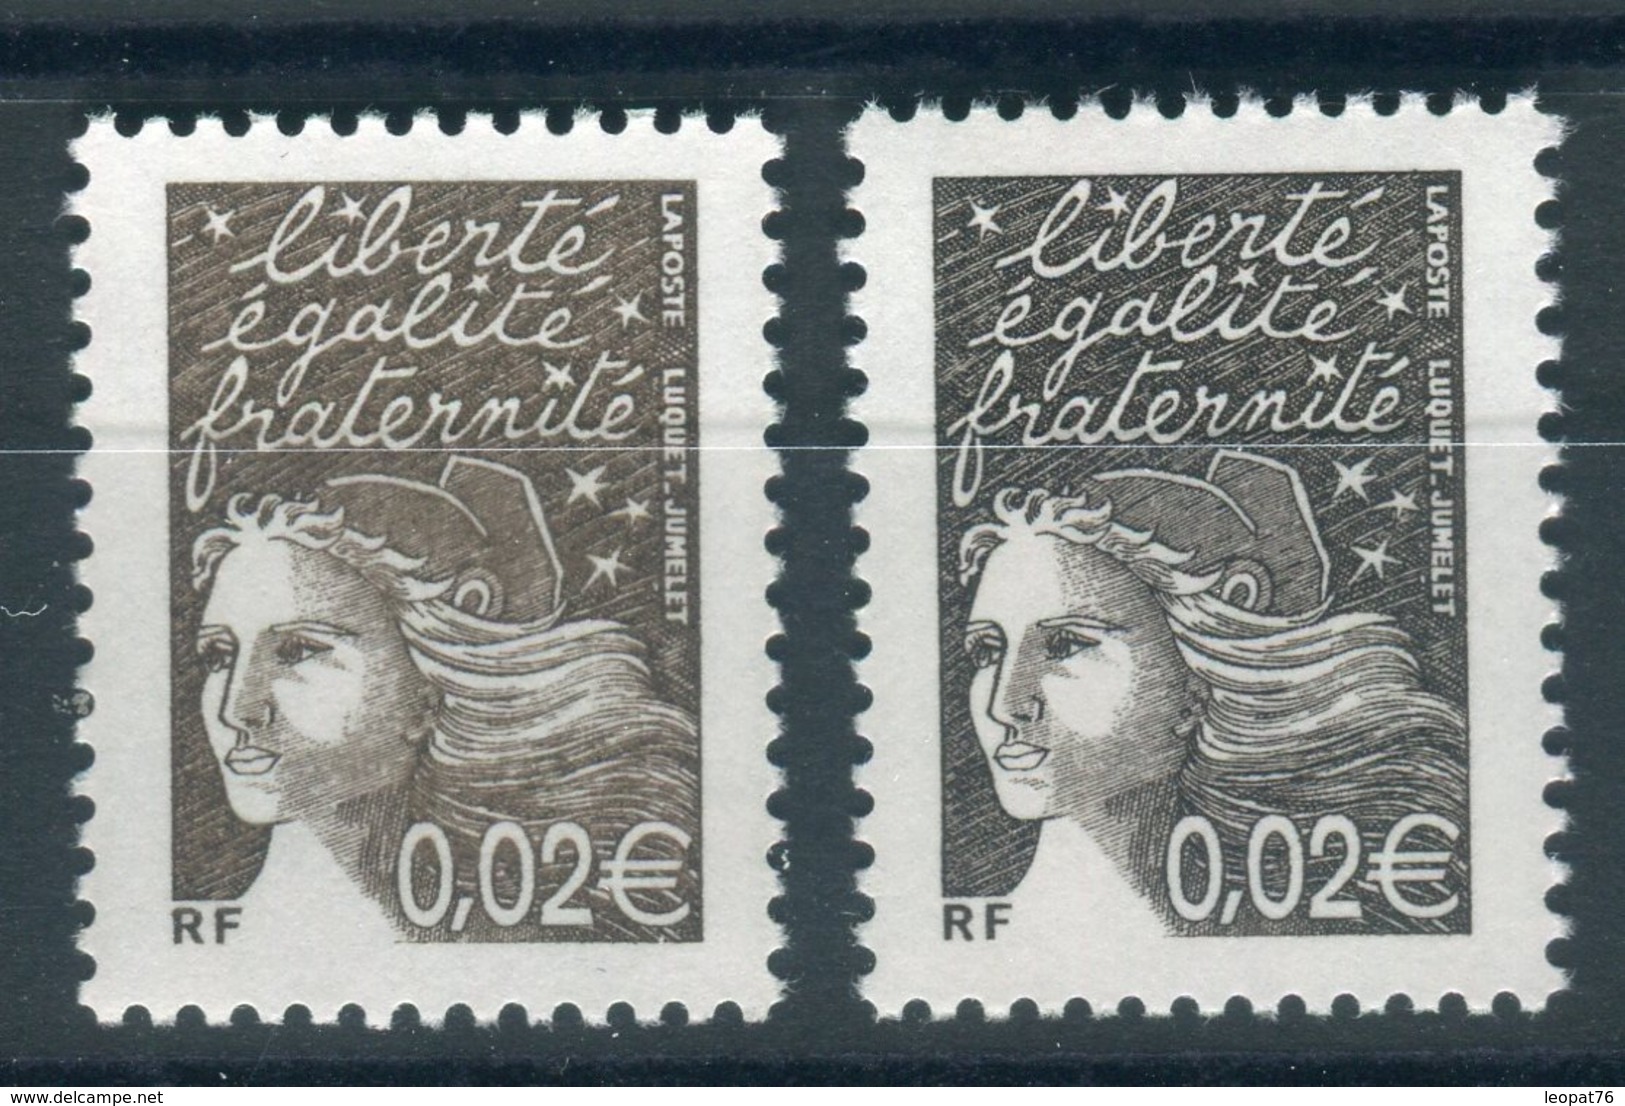 Variété N° Yvert 3444,1 Exemplaire Brun + Normal Bistre Noir, Neufs Luxe - Prix Fixe - Réf V 781 - Unused Stamps